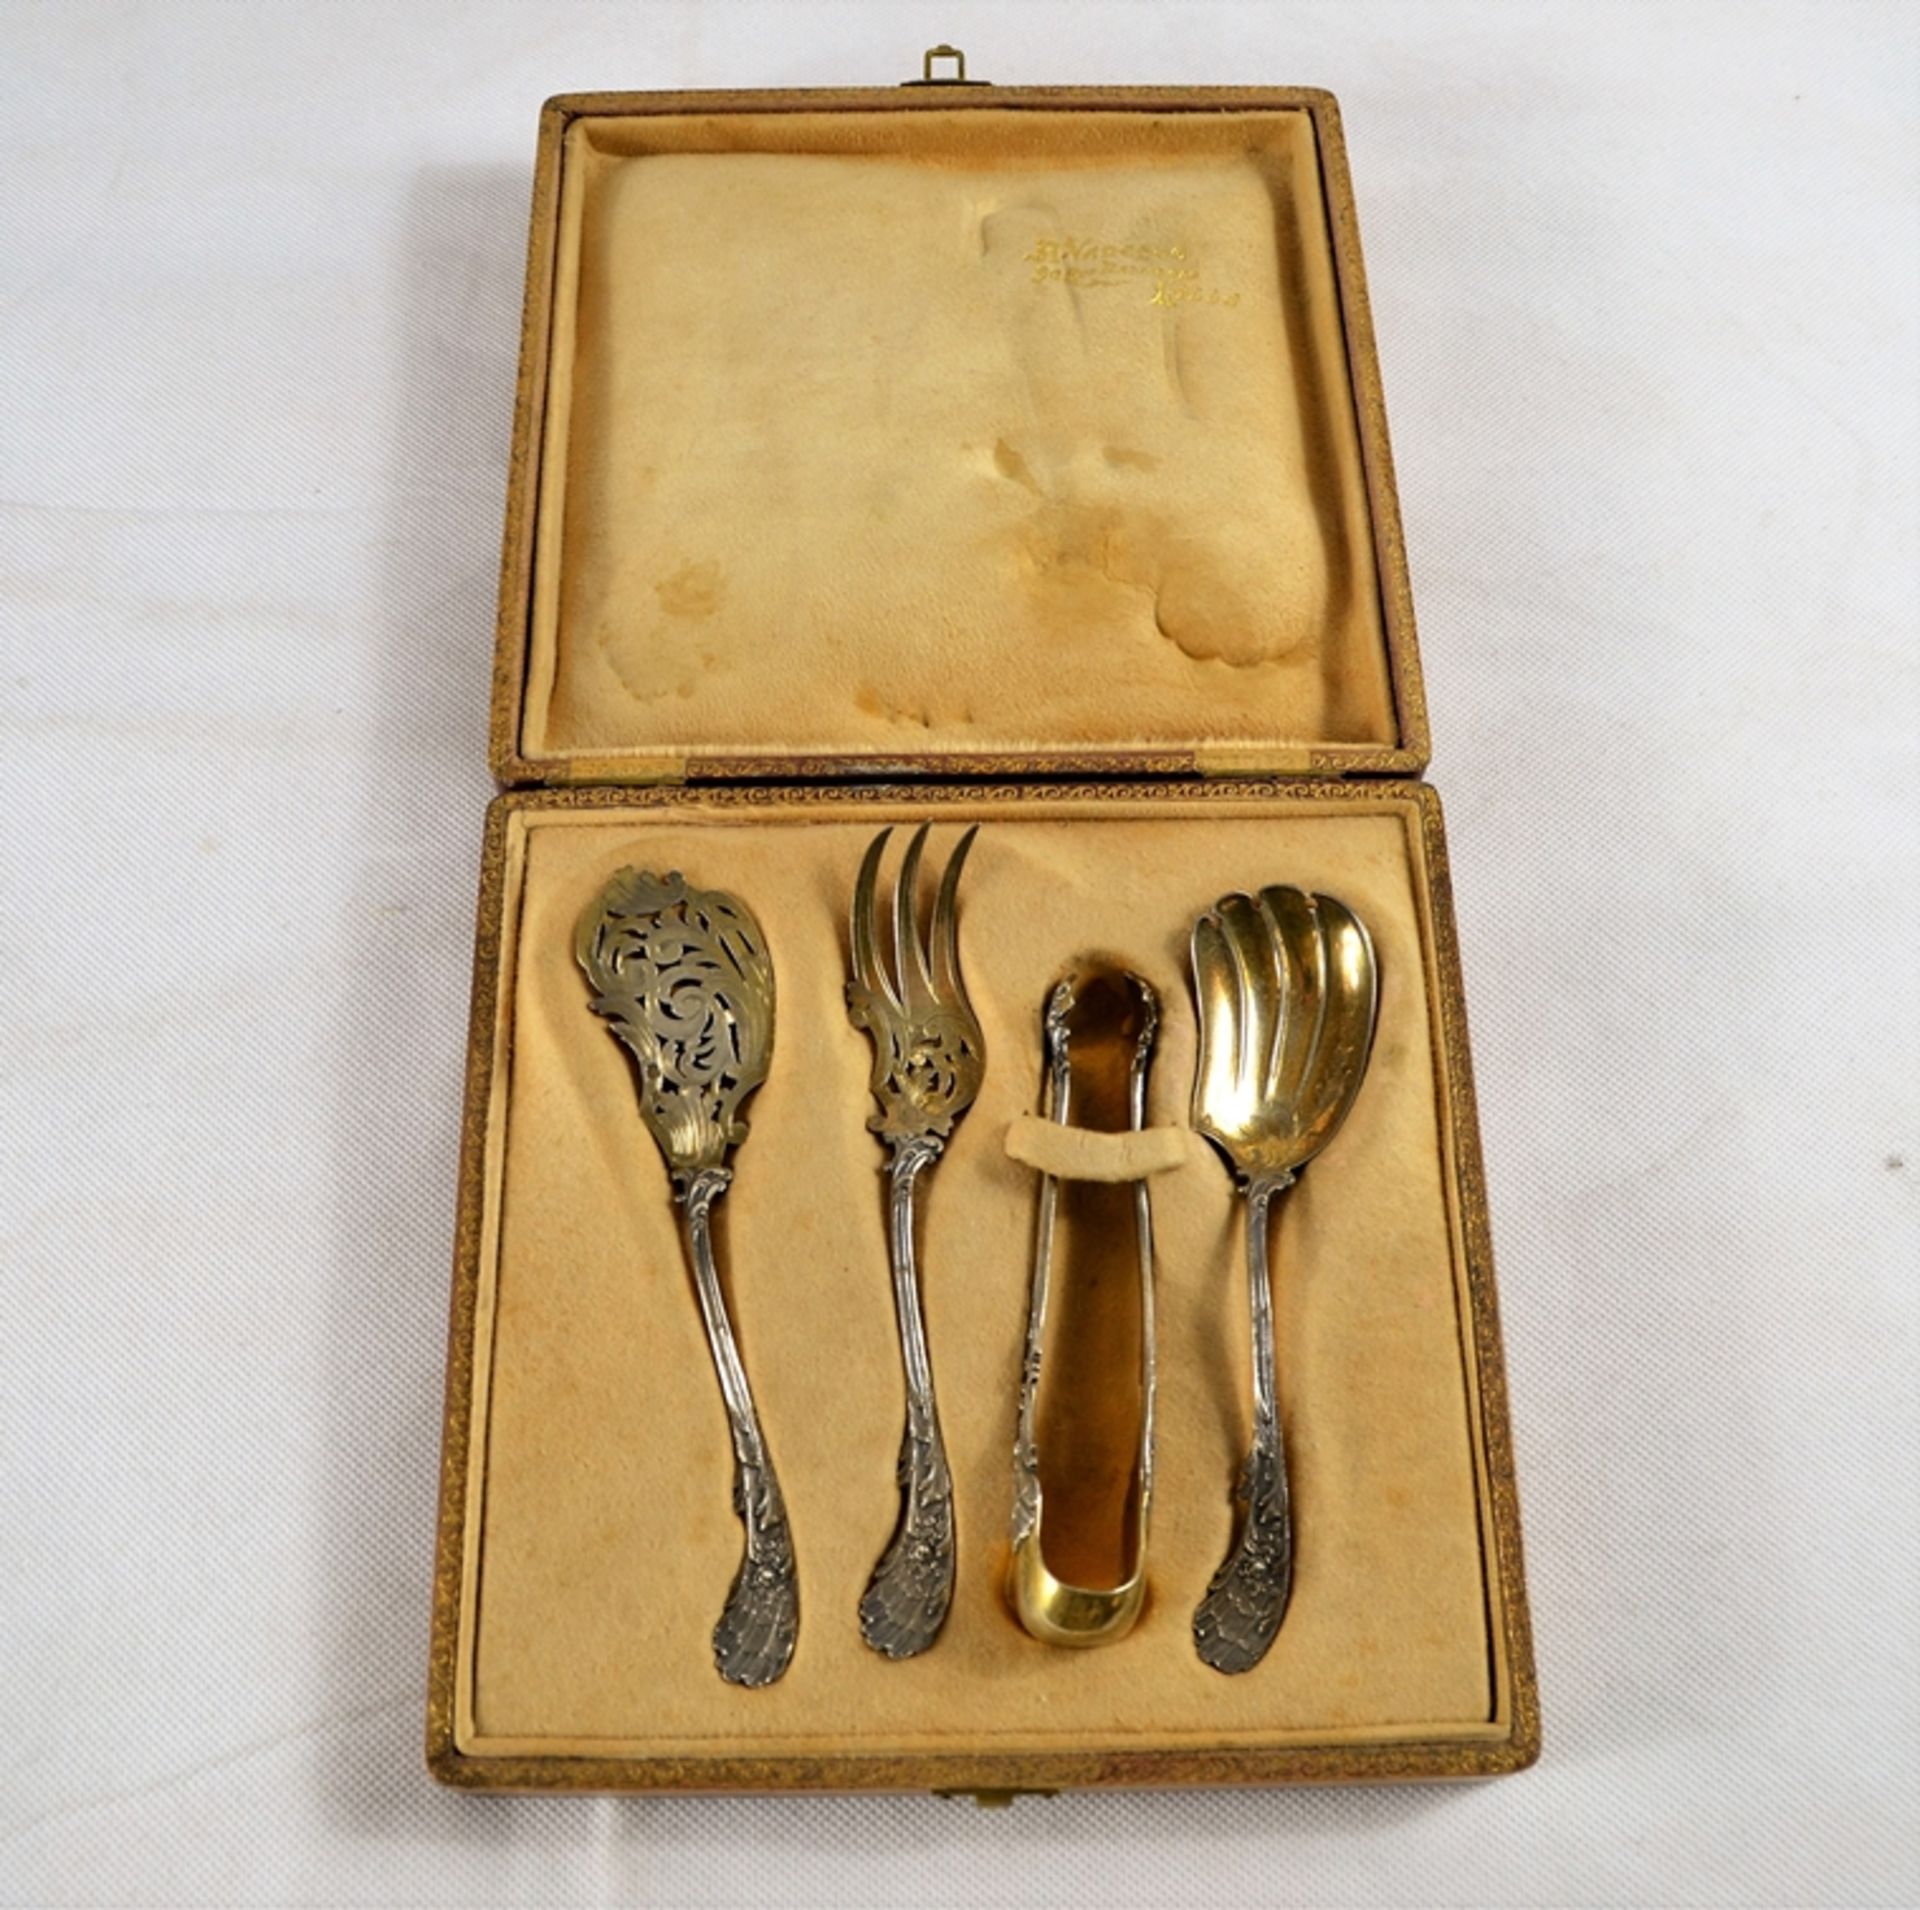 Vorlege Garnitur wohl Pralinen Silber 950 Frankreich um 1900, 4-teilig, ziseliert tlw. vergoldet, M